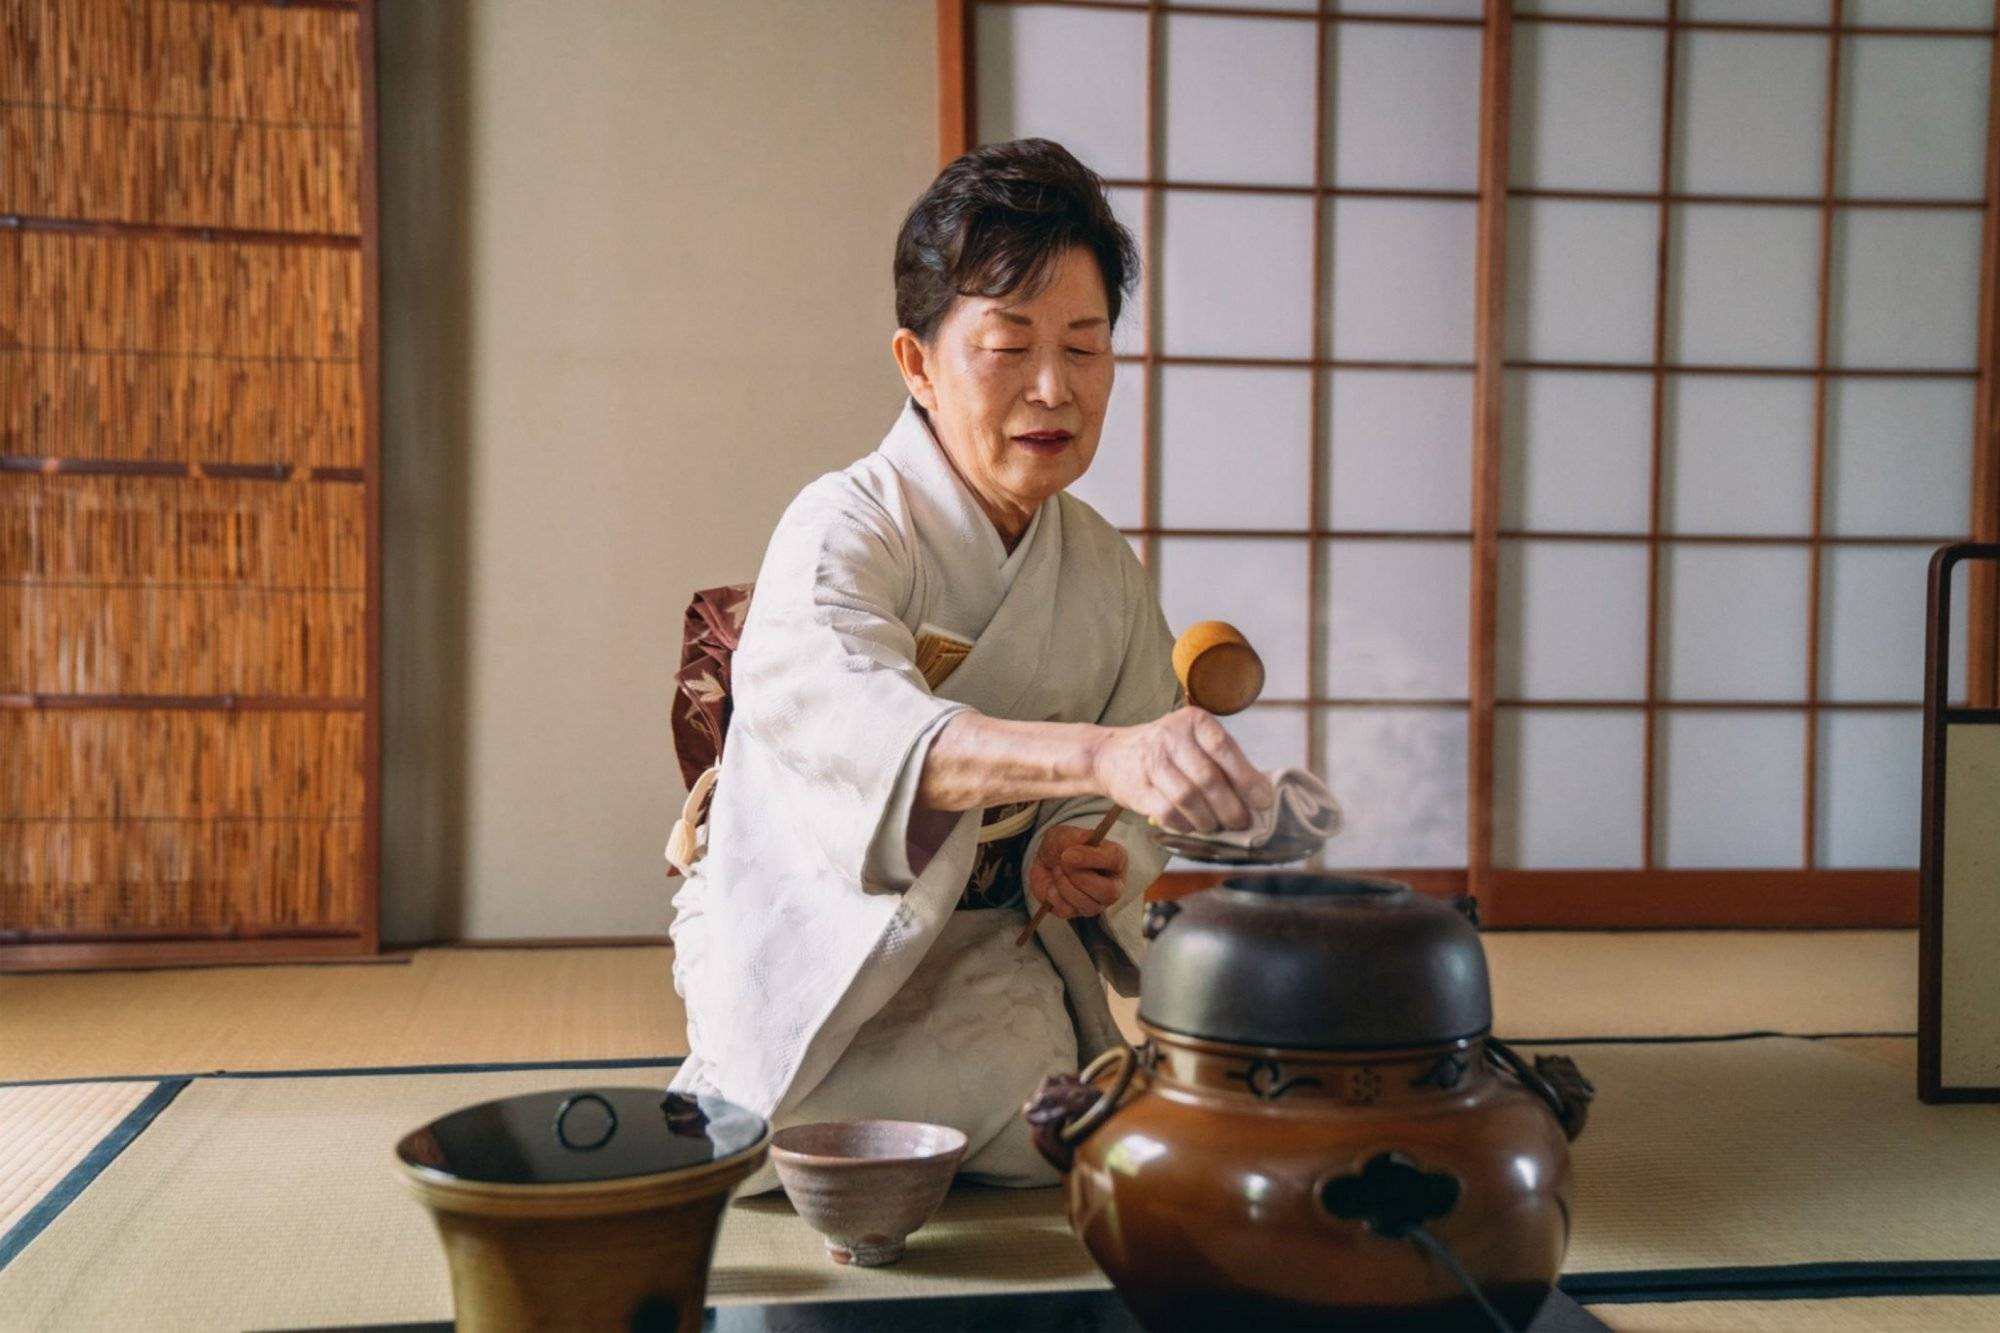 La cérémonie du thé Matcha : un rituel traditionnel japonais